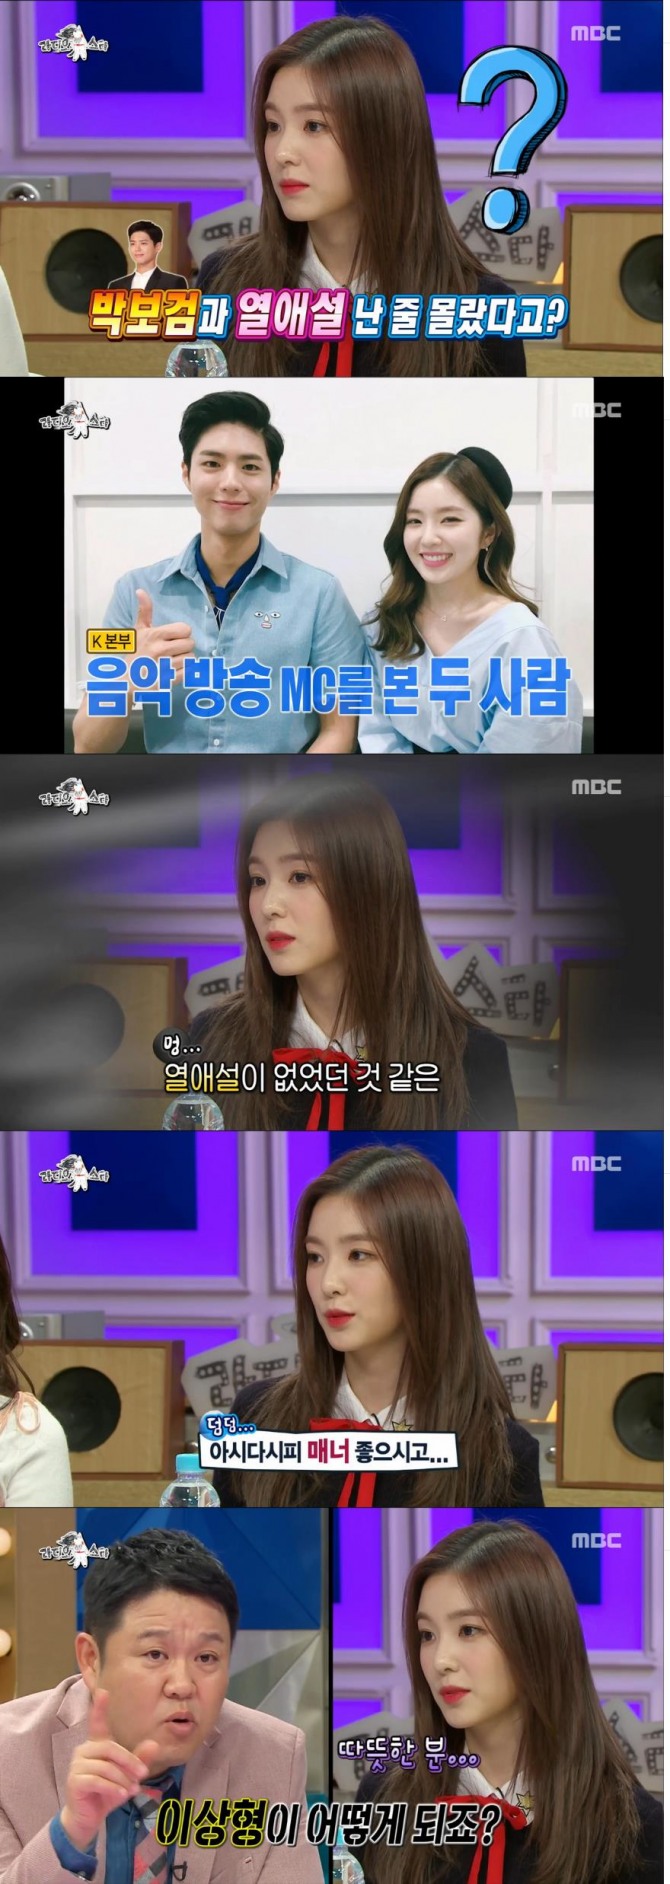 7일 방송된 MBC '황금어장 리디오스타'에 레드벨벳의 아이린이 출연했다./사진=MBC 방송 캡처